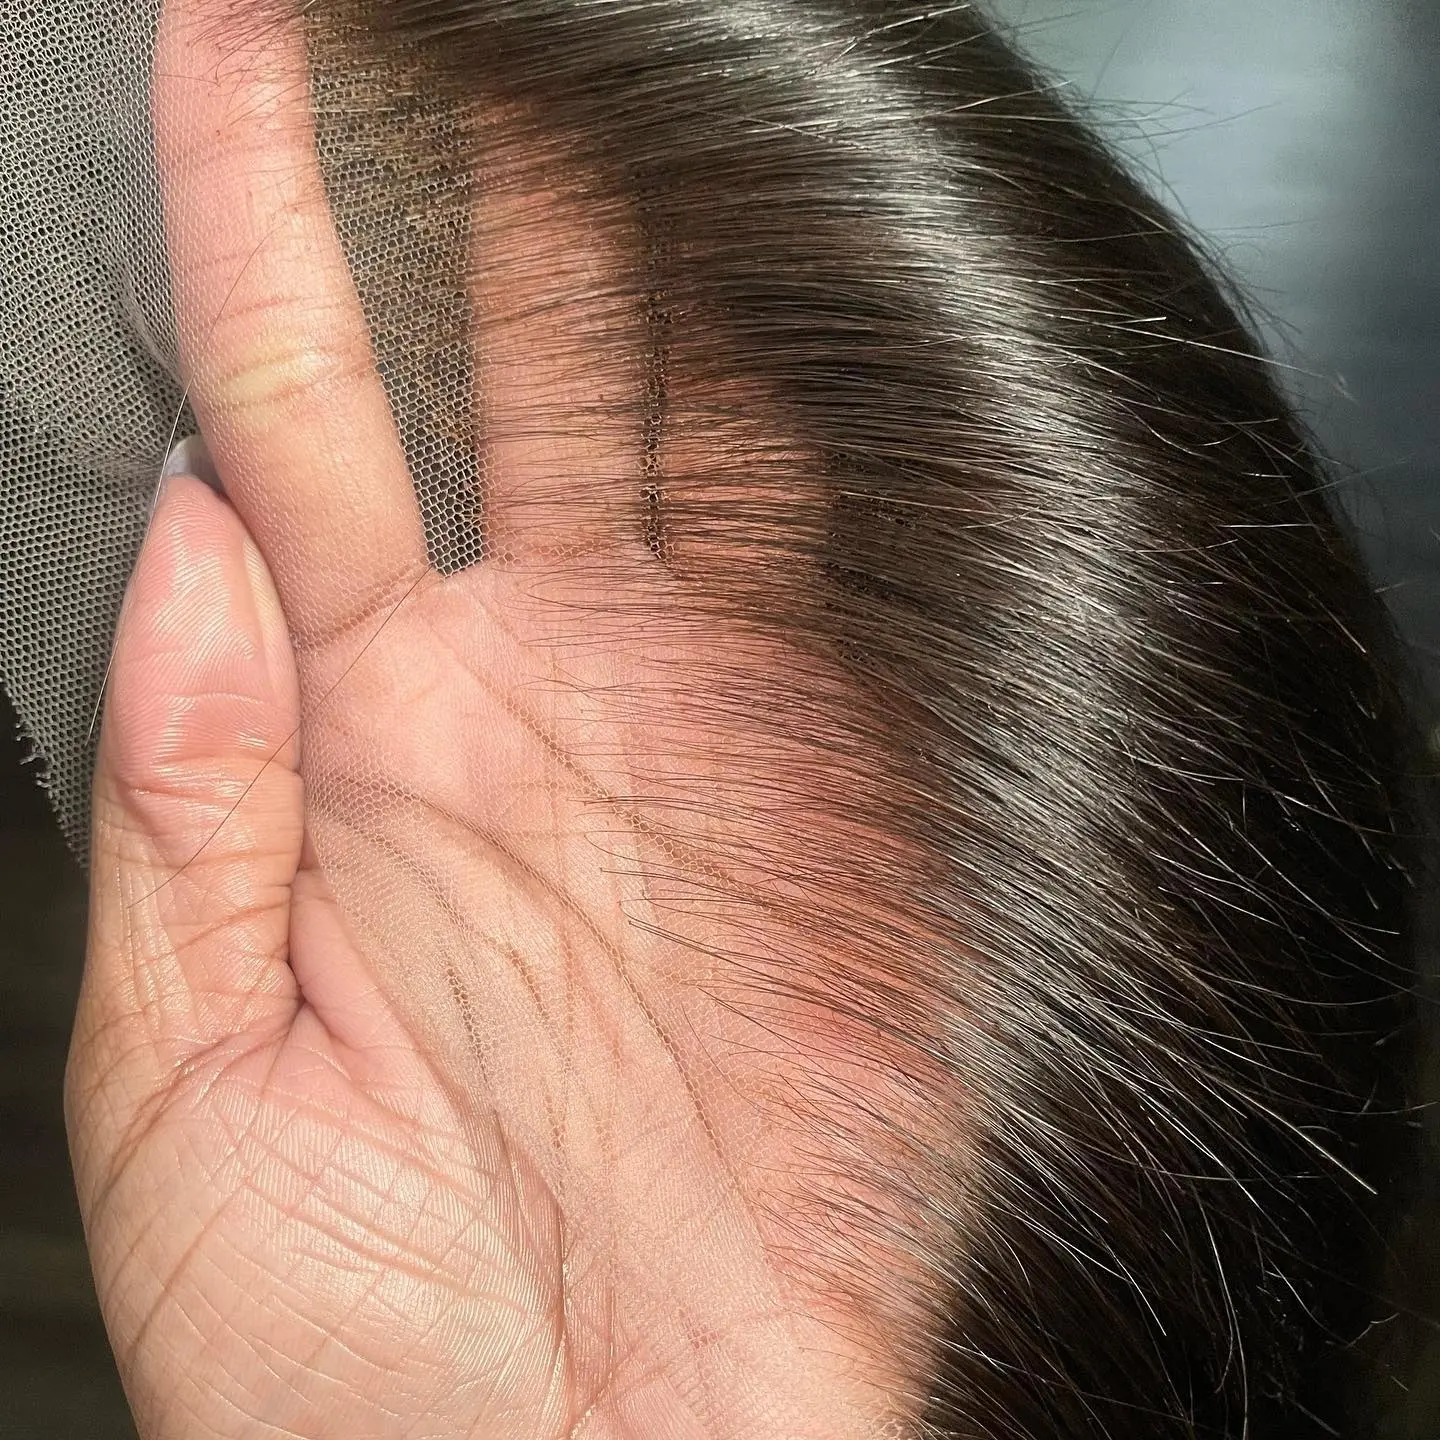 Tutkalsız tam HD 360 sırma ön peruk düz dantel ön peruk siyah kadın peruk için ön doğal insan saçı peruk